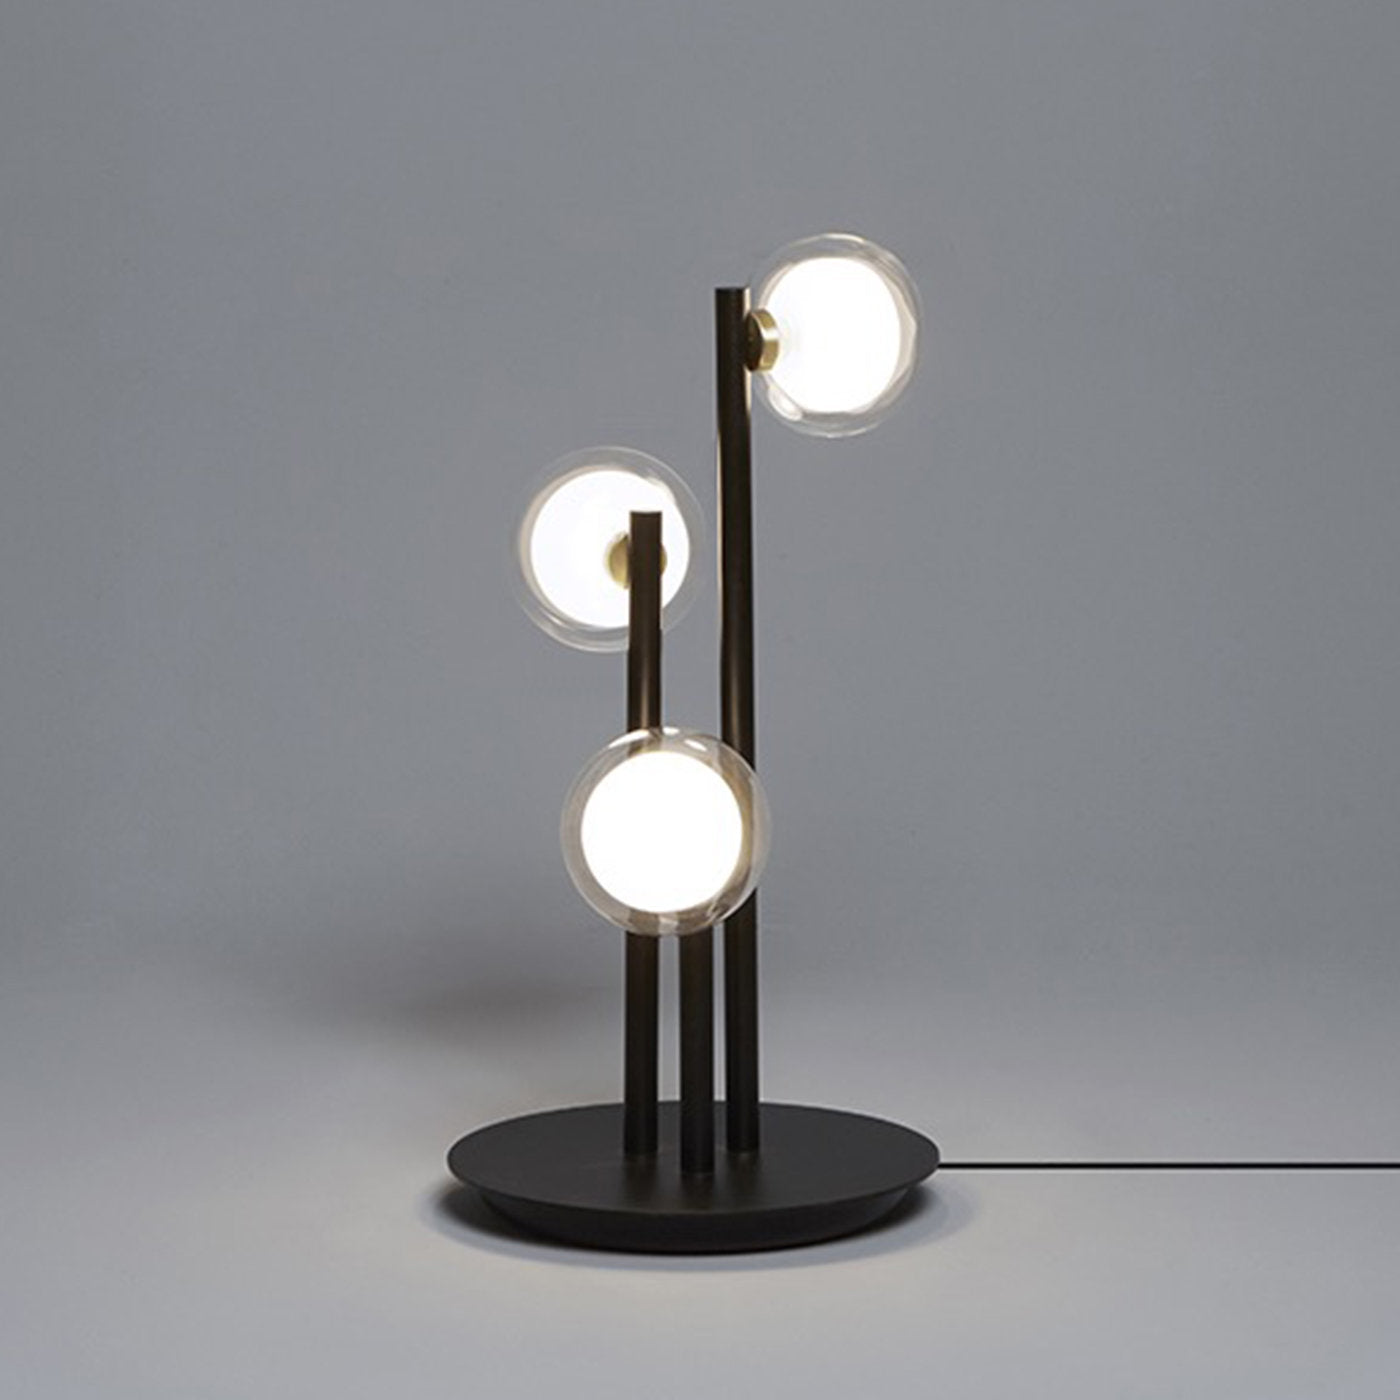 Nabila Three Circles Table Lamp by Corrado Dotti - Alternative view 1